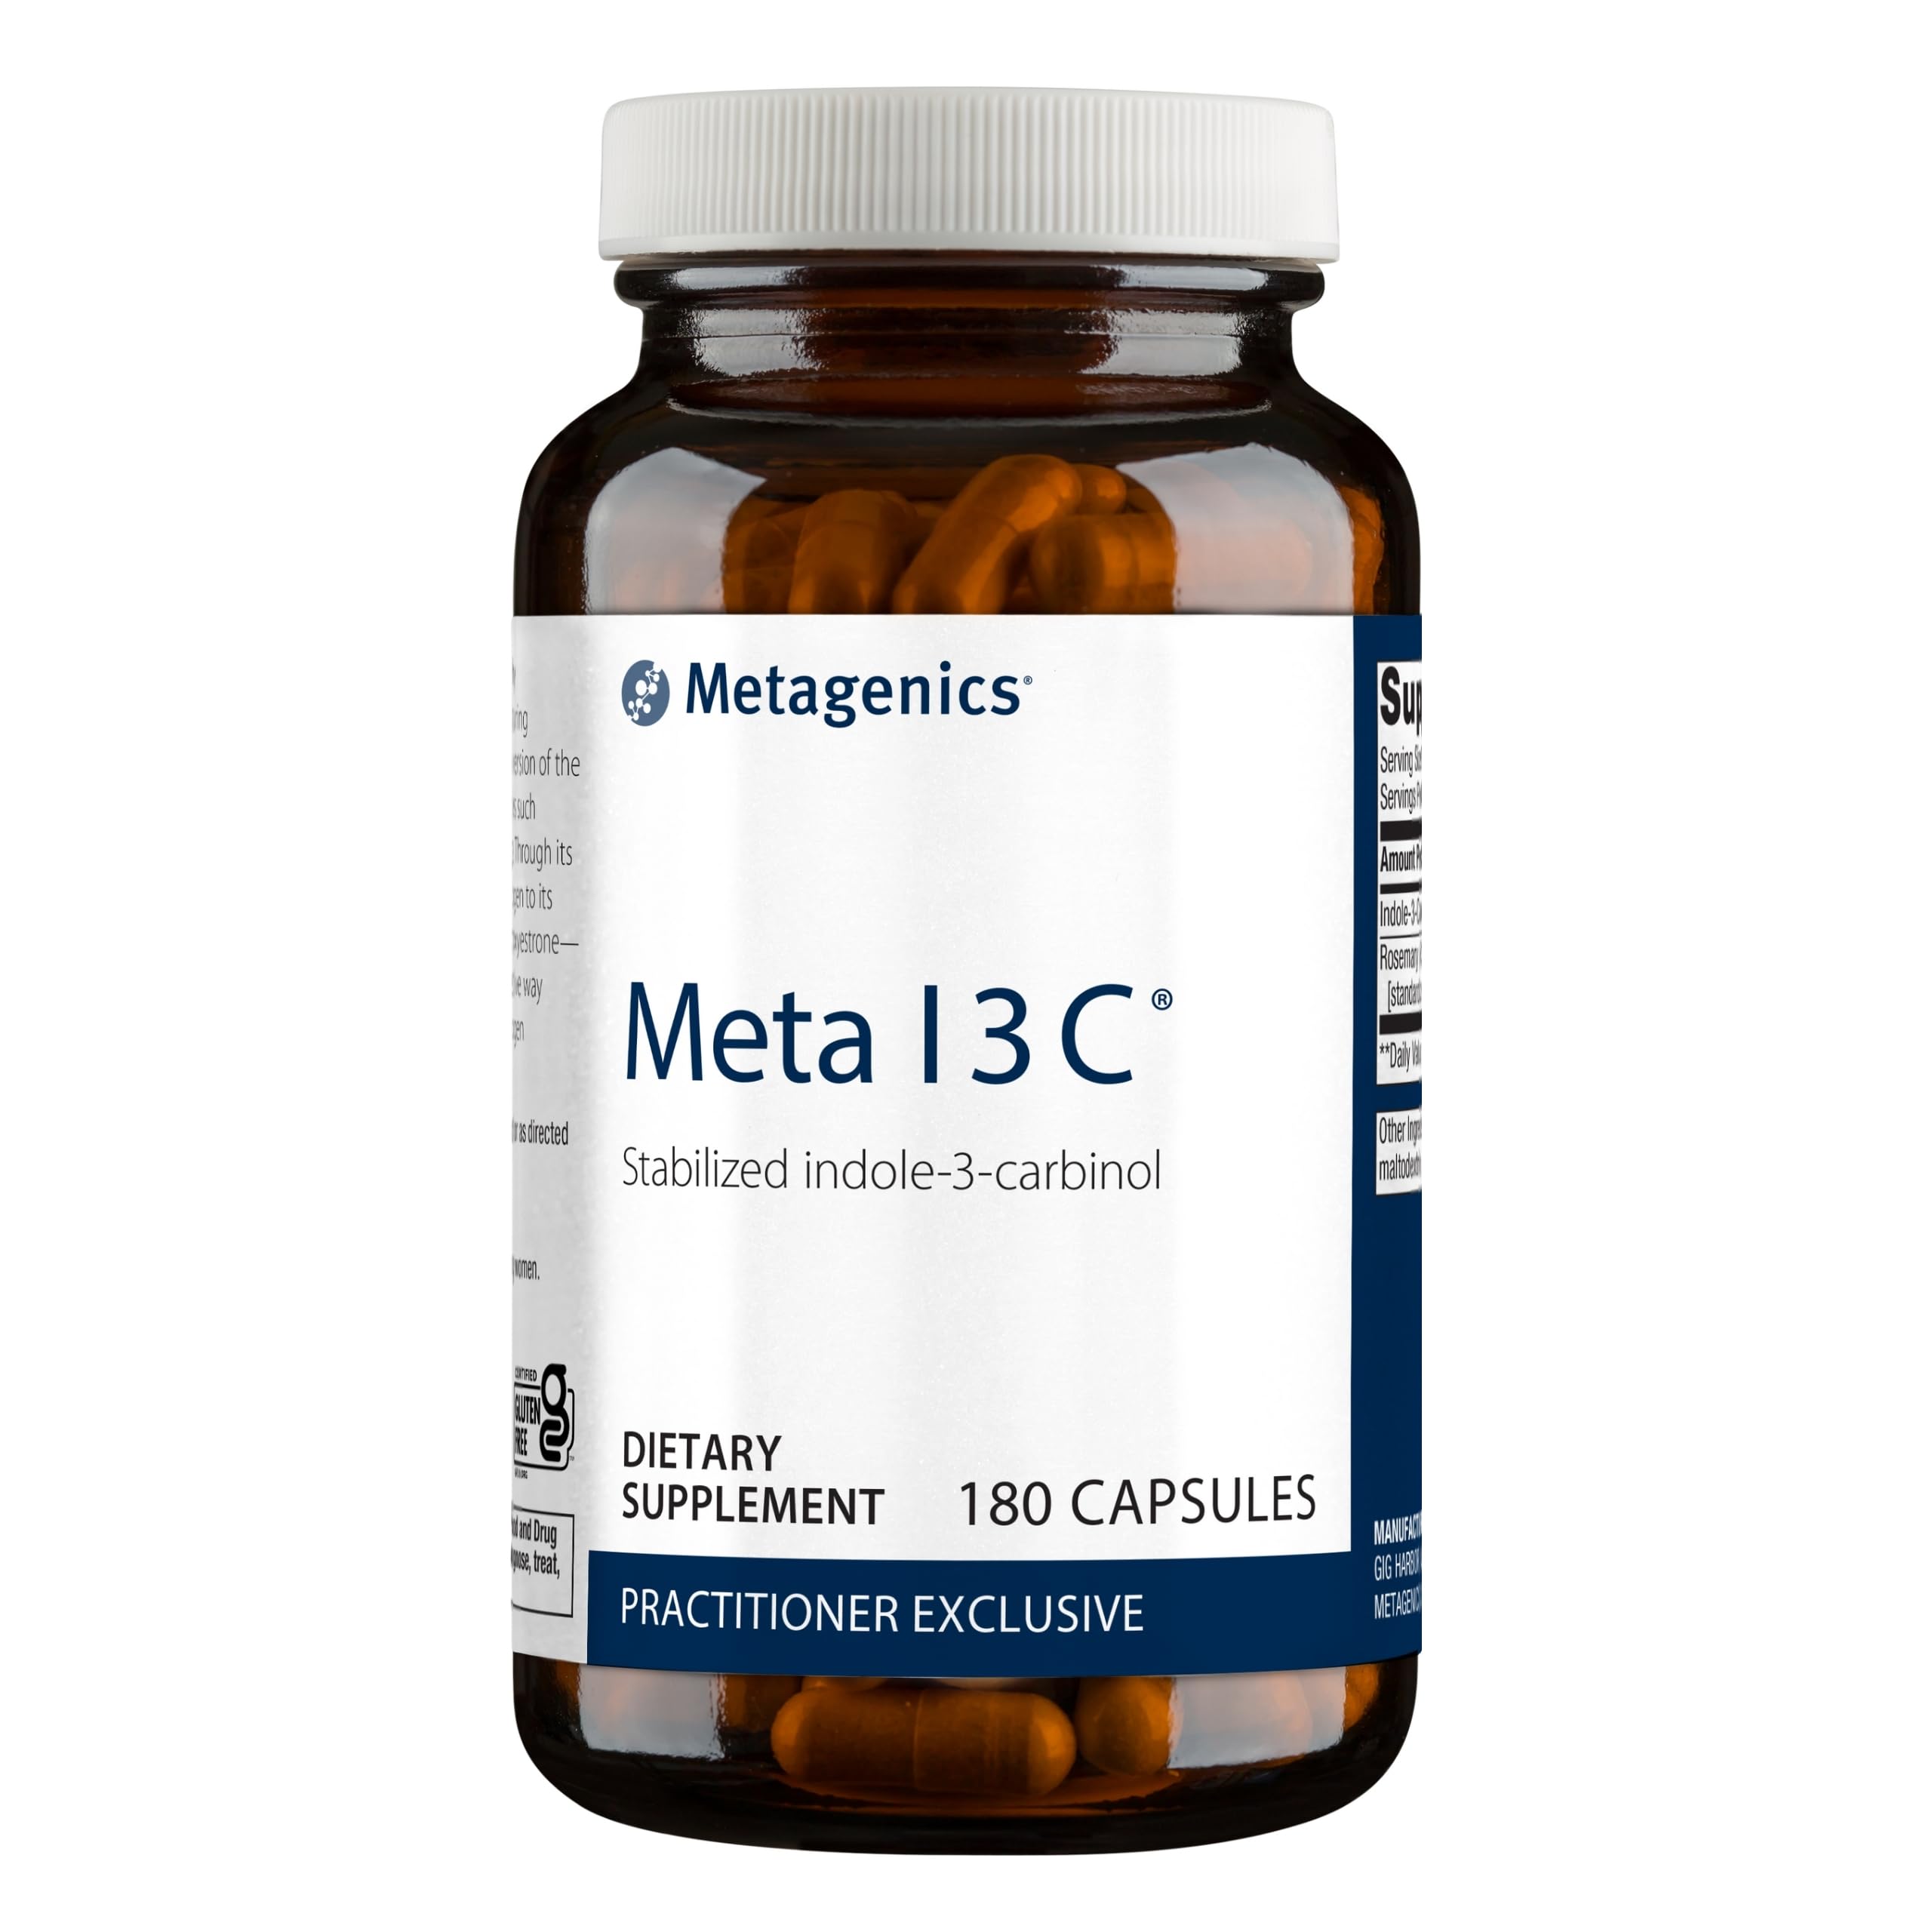 Metagenics Meta I 3 C - 150 g Indole-3-Carbinol -180 Capsules